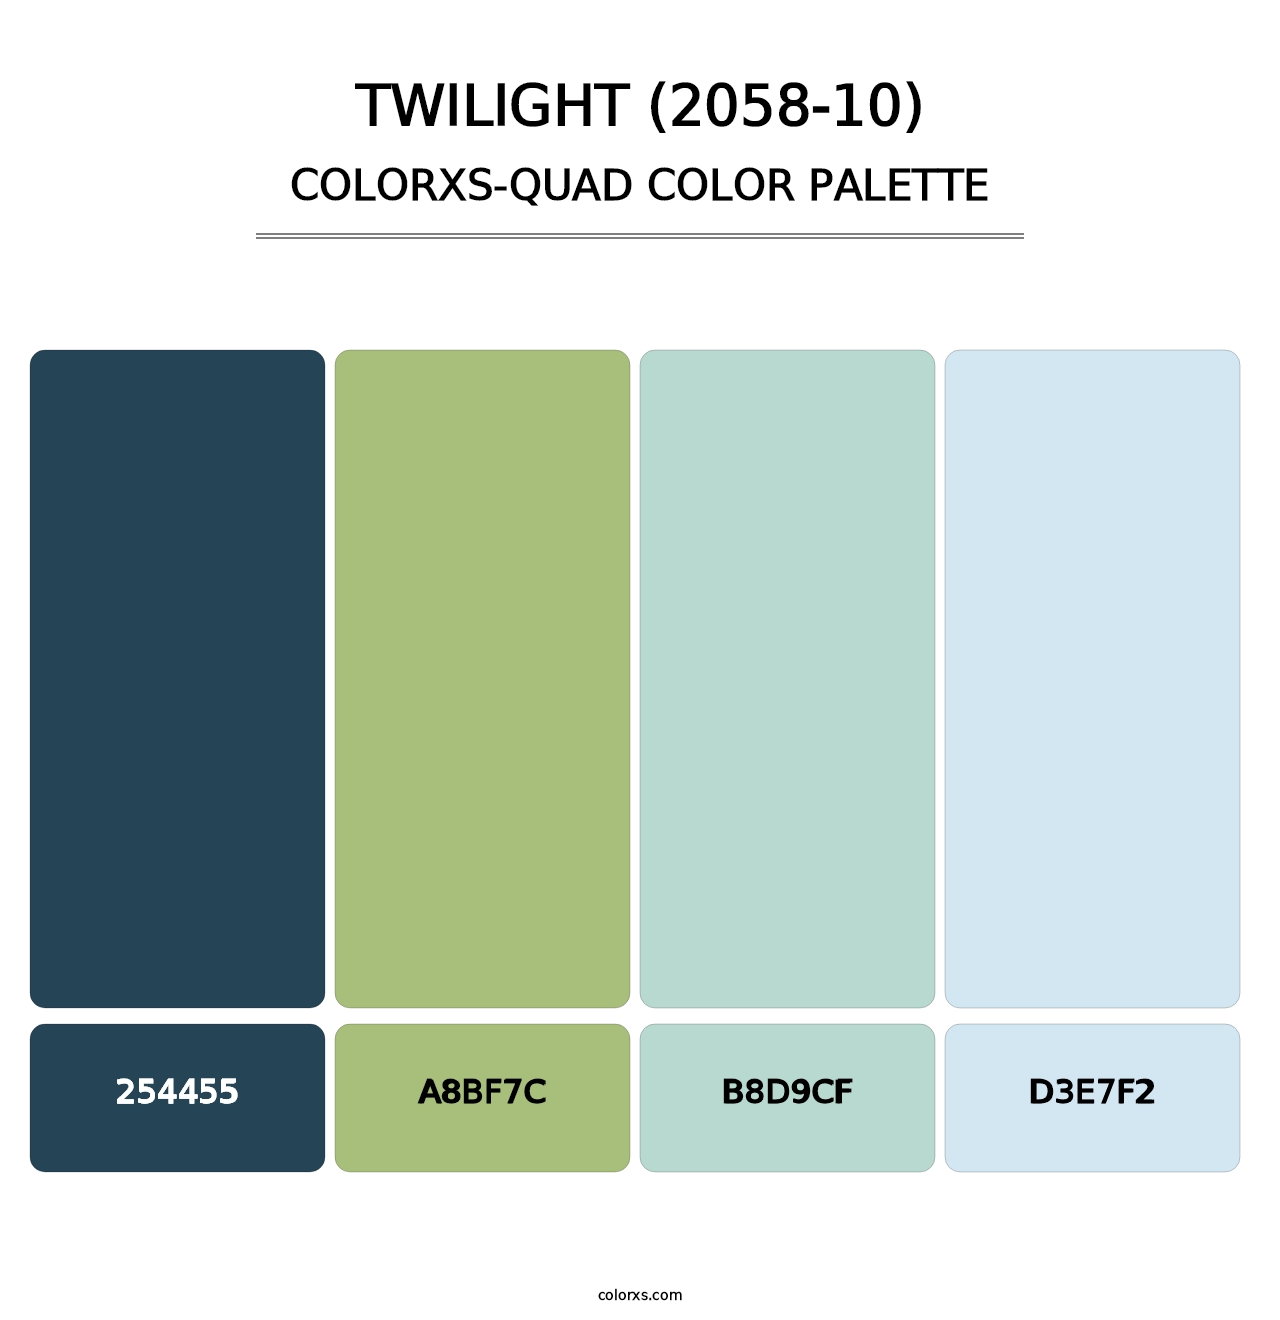 Twilight (2058-10) - Colorxs Quad Palette